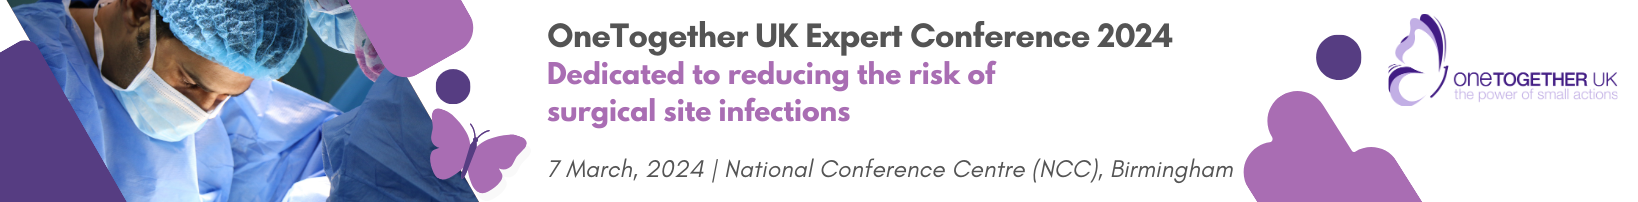 OneTogether UK Expert Conference 2024